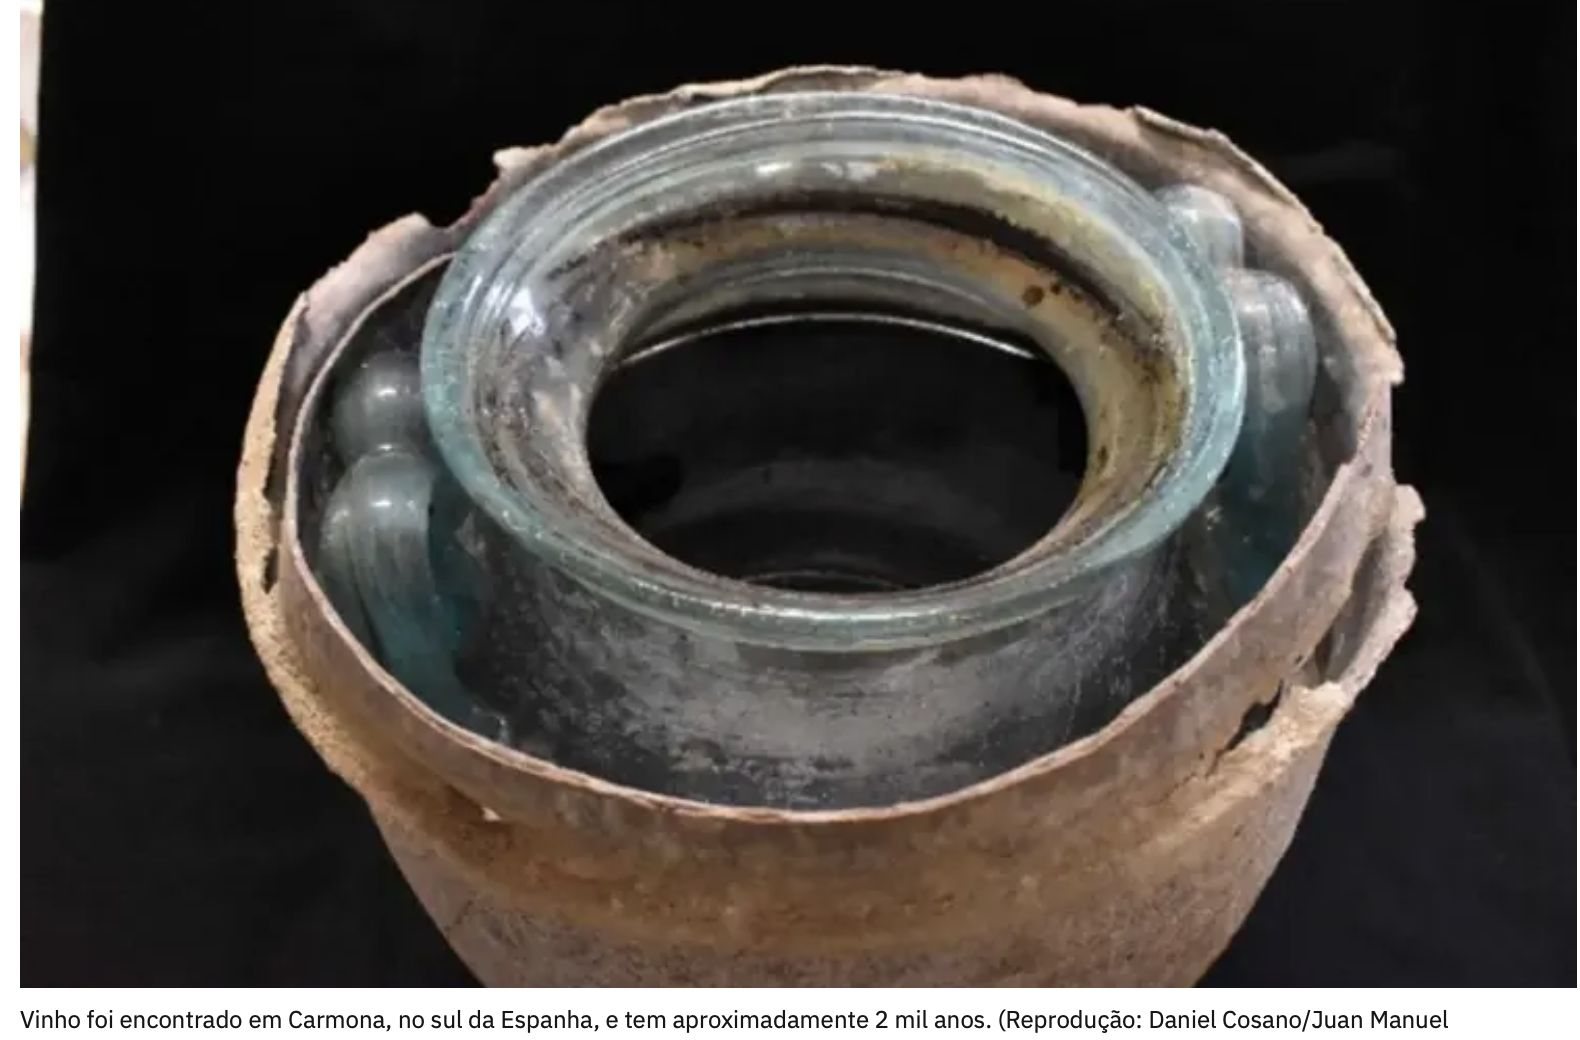 Vinho com 2 mil anos encontrado em urna funerária de vidro com restos mortais em Carmona